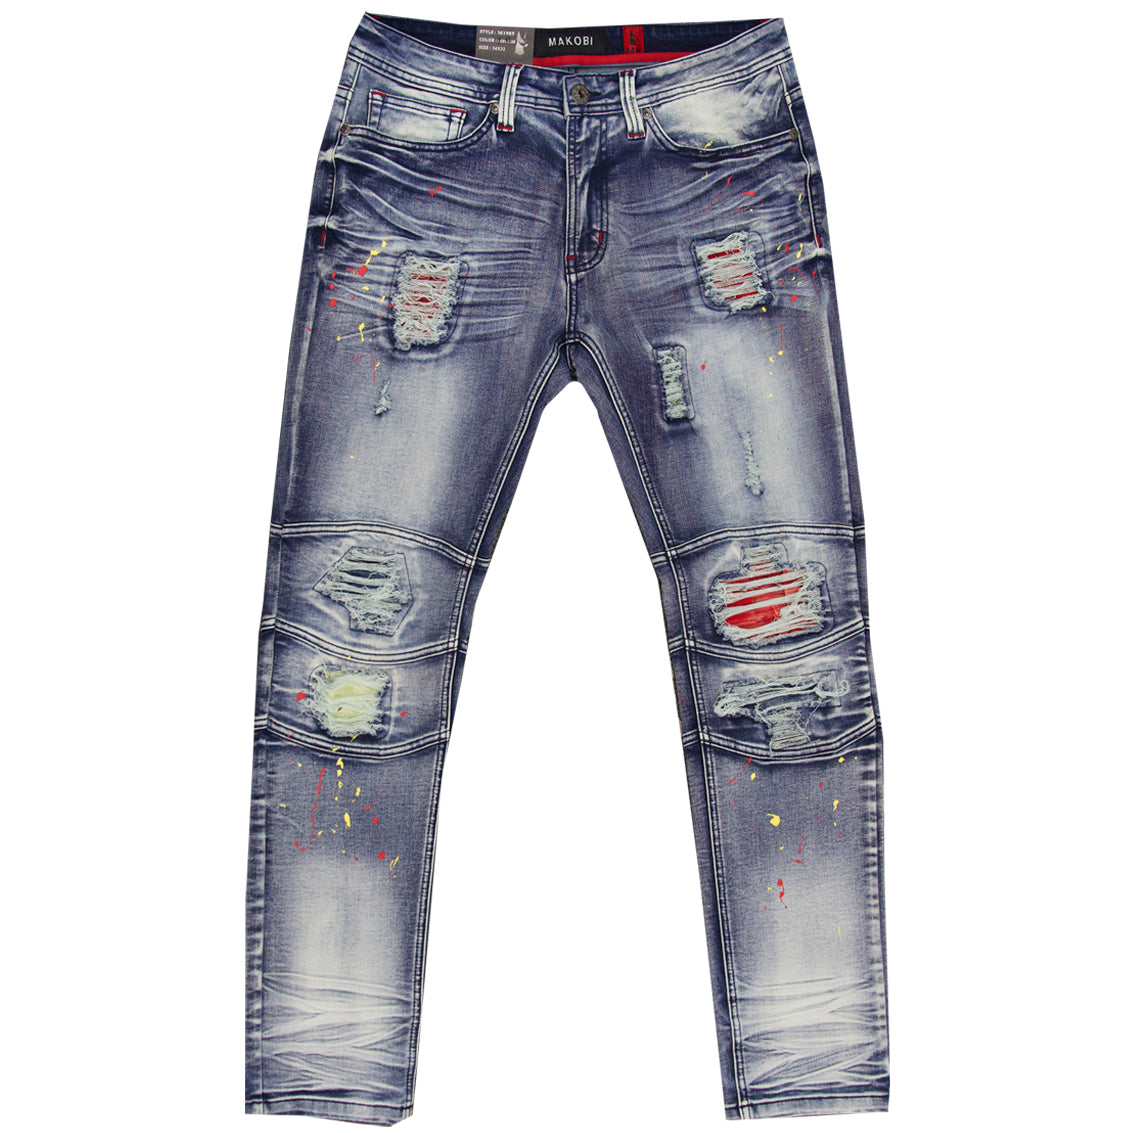 M1771 Makobi Petani Shredded Jeans With Bleach Spots - Dirt Wash ...